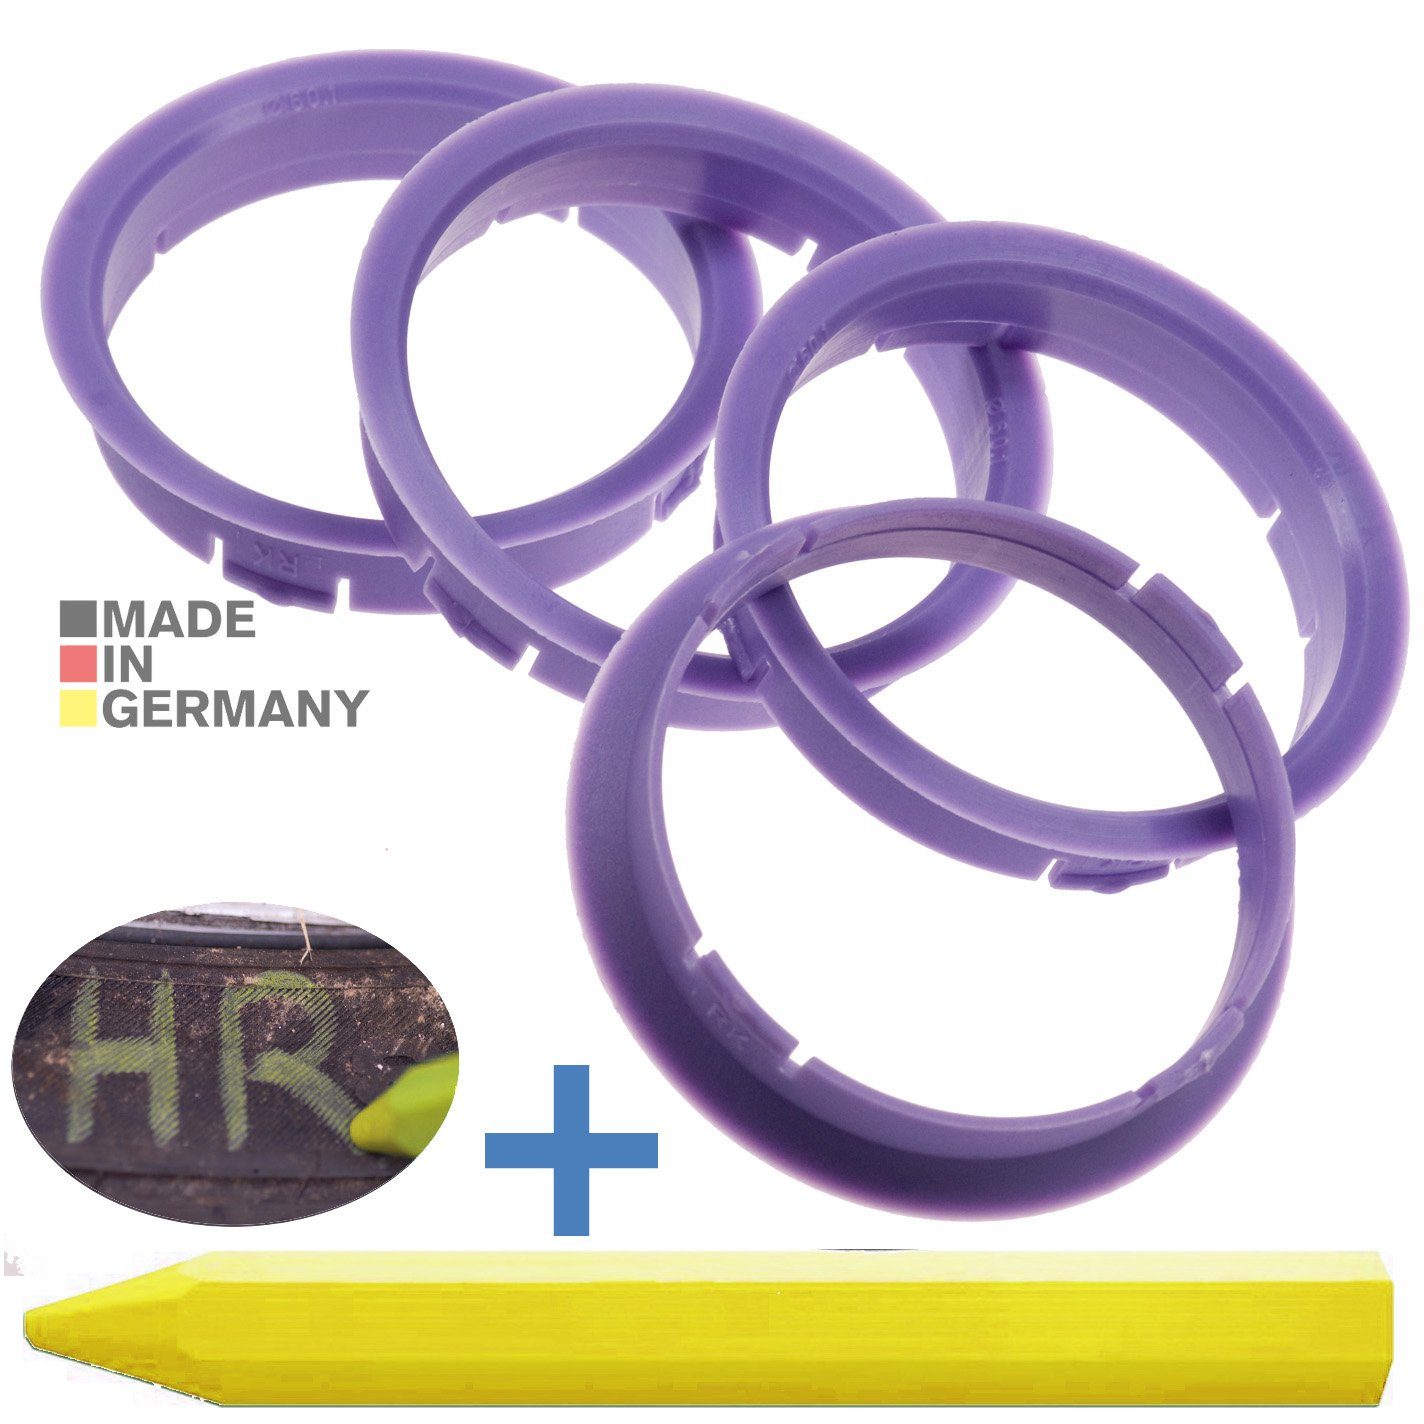 RKC Reifenstift 4X Zentrierringe Ringe mm Maße: Lila Kreide Stift, Reifen 1x 60,1 x 63,3 Fett + Felgen